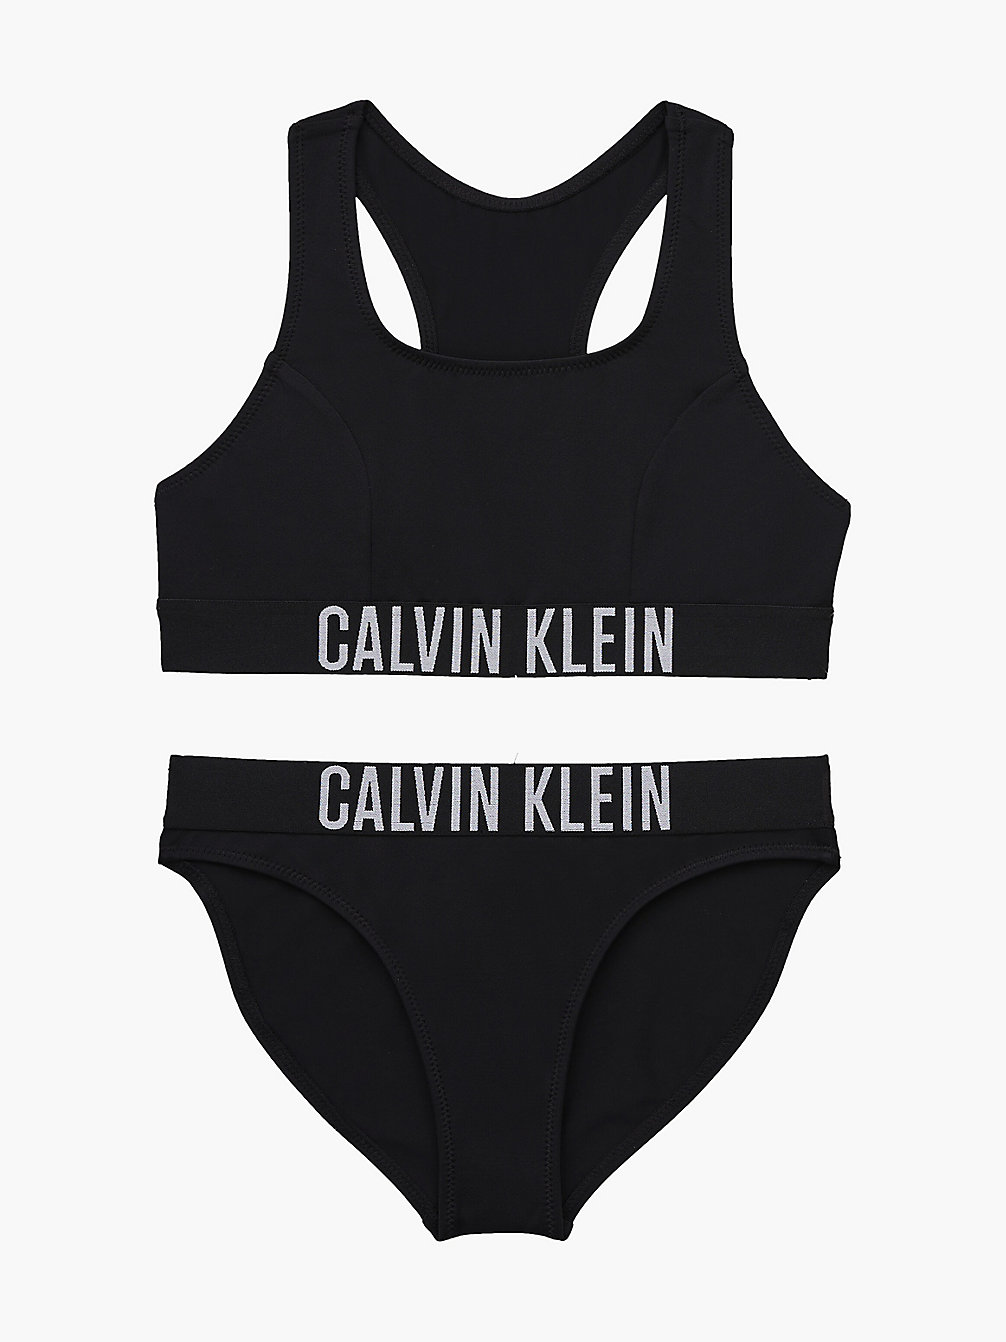 PVH BLACK > Meisjesbralette Bikini - Intense Power > undefined meisjes - Calvin Klein